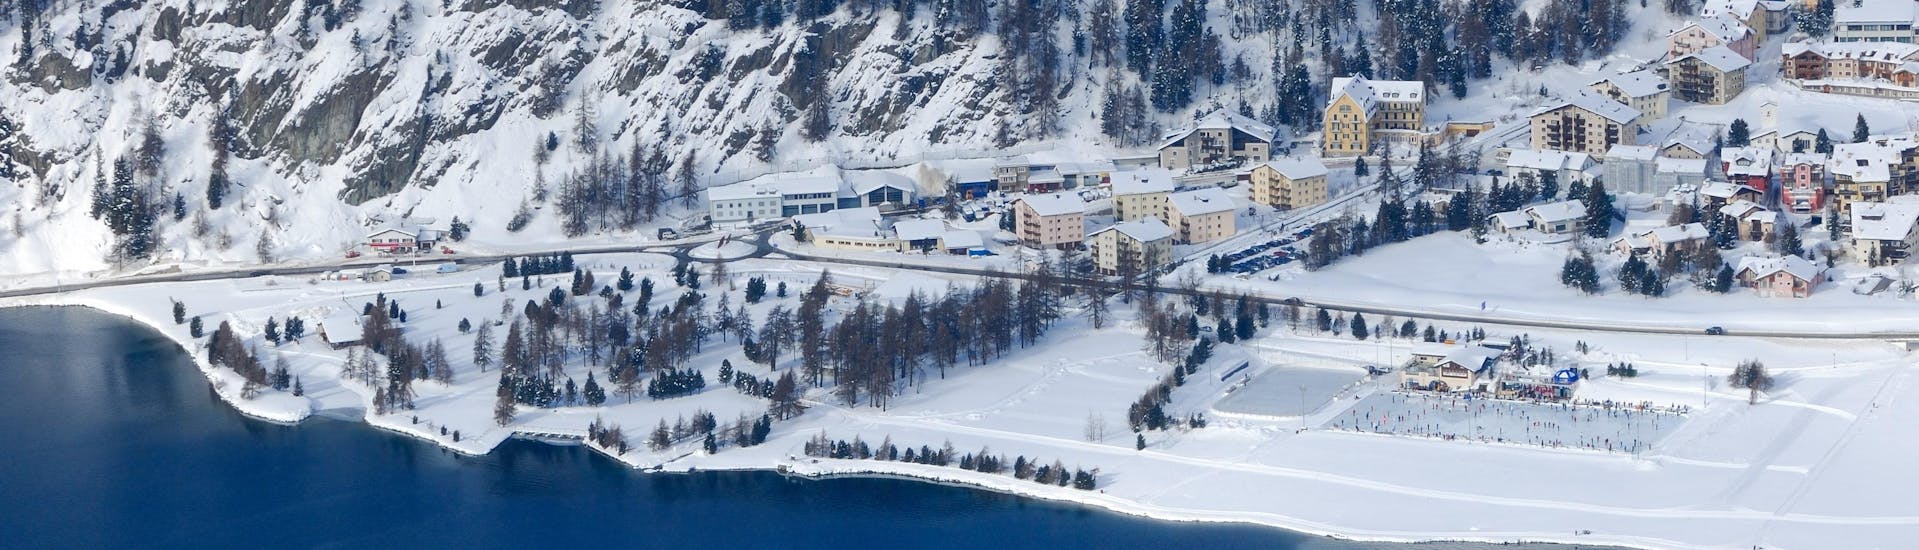 Eine schneebedeckte Stadt am See in Corvatsch-Silvaplana in der Schweiz.